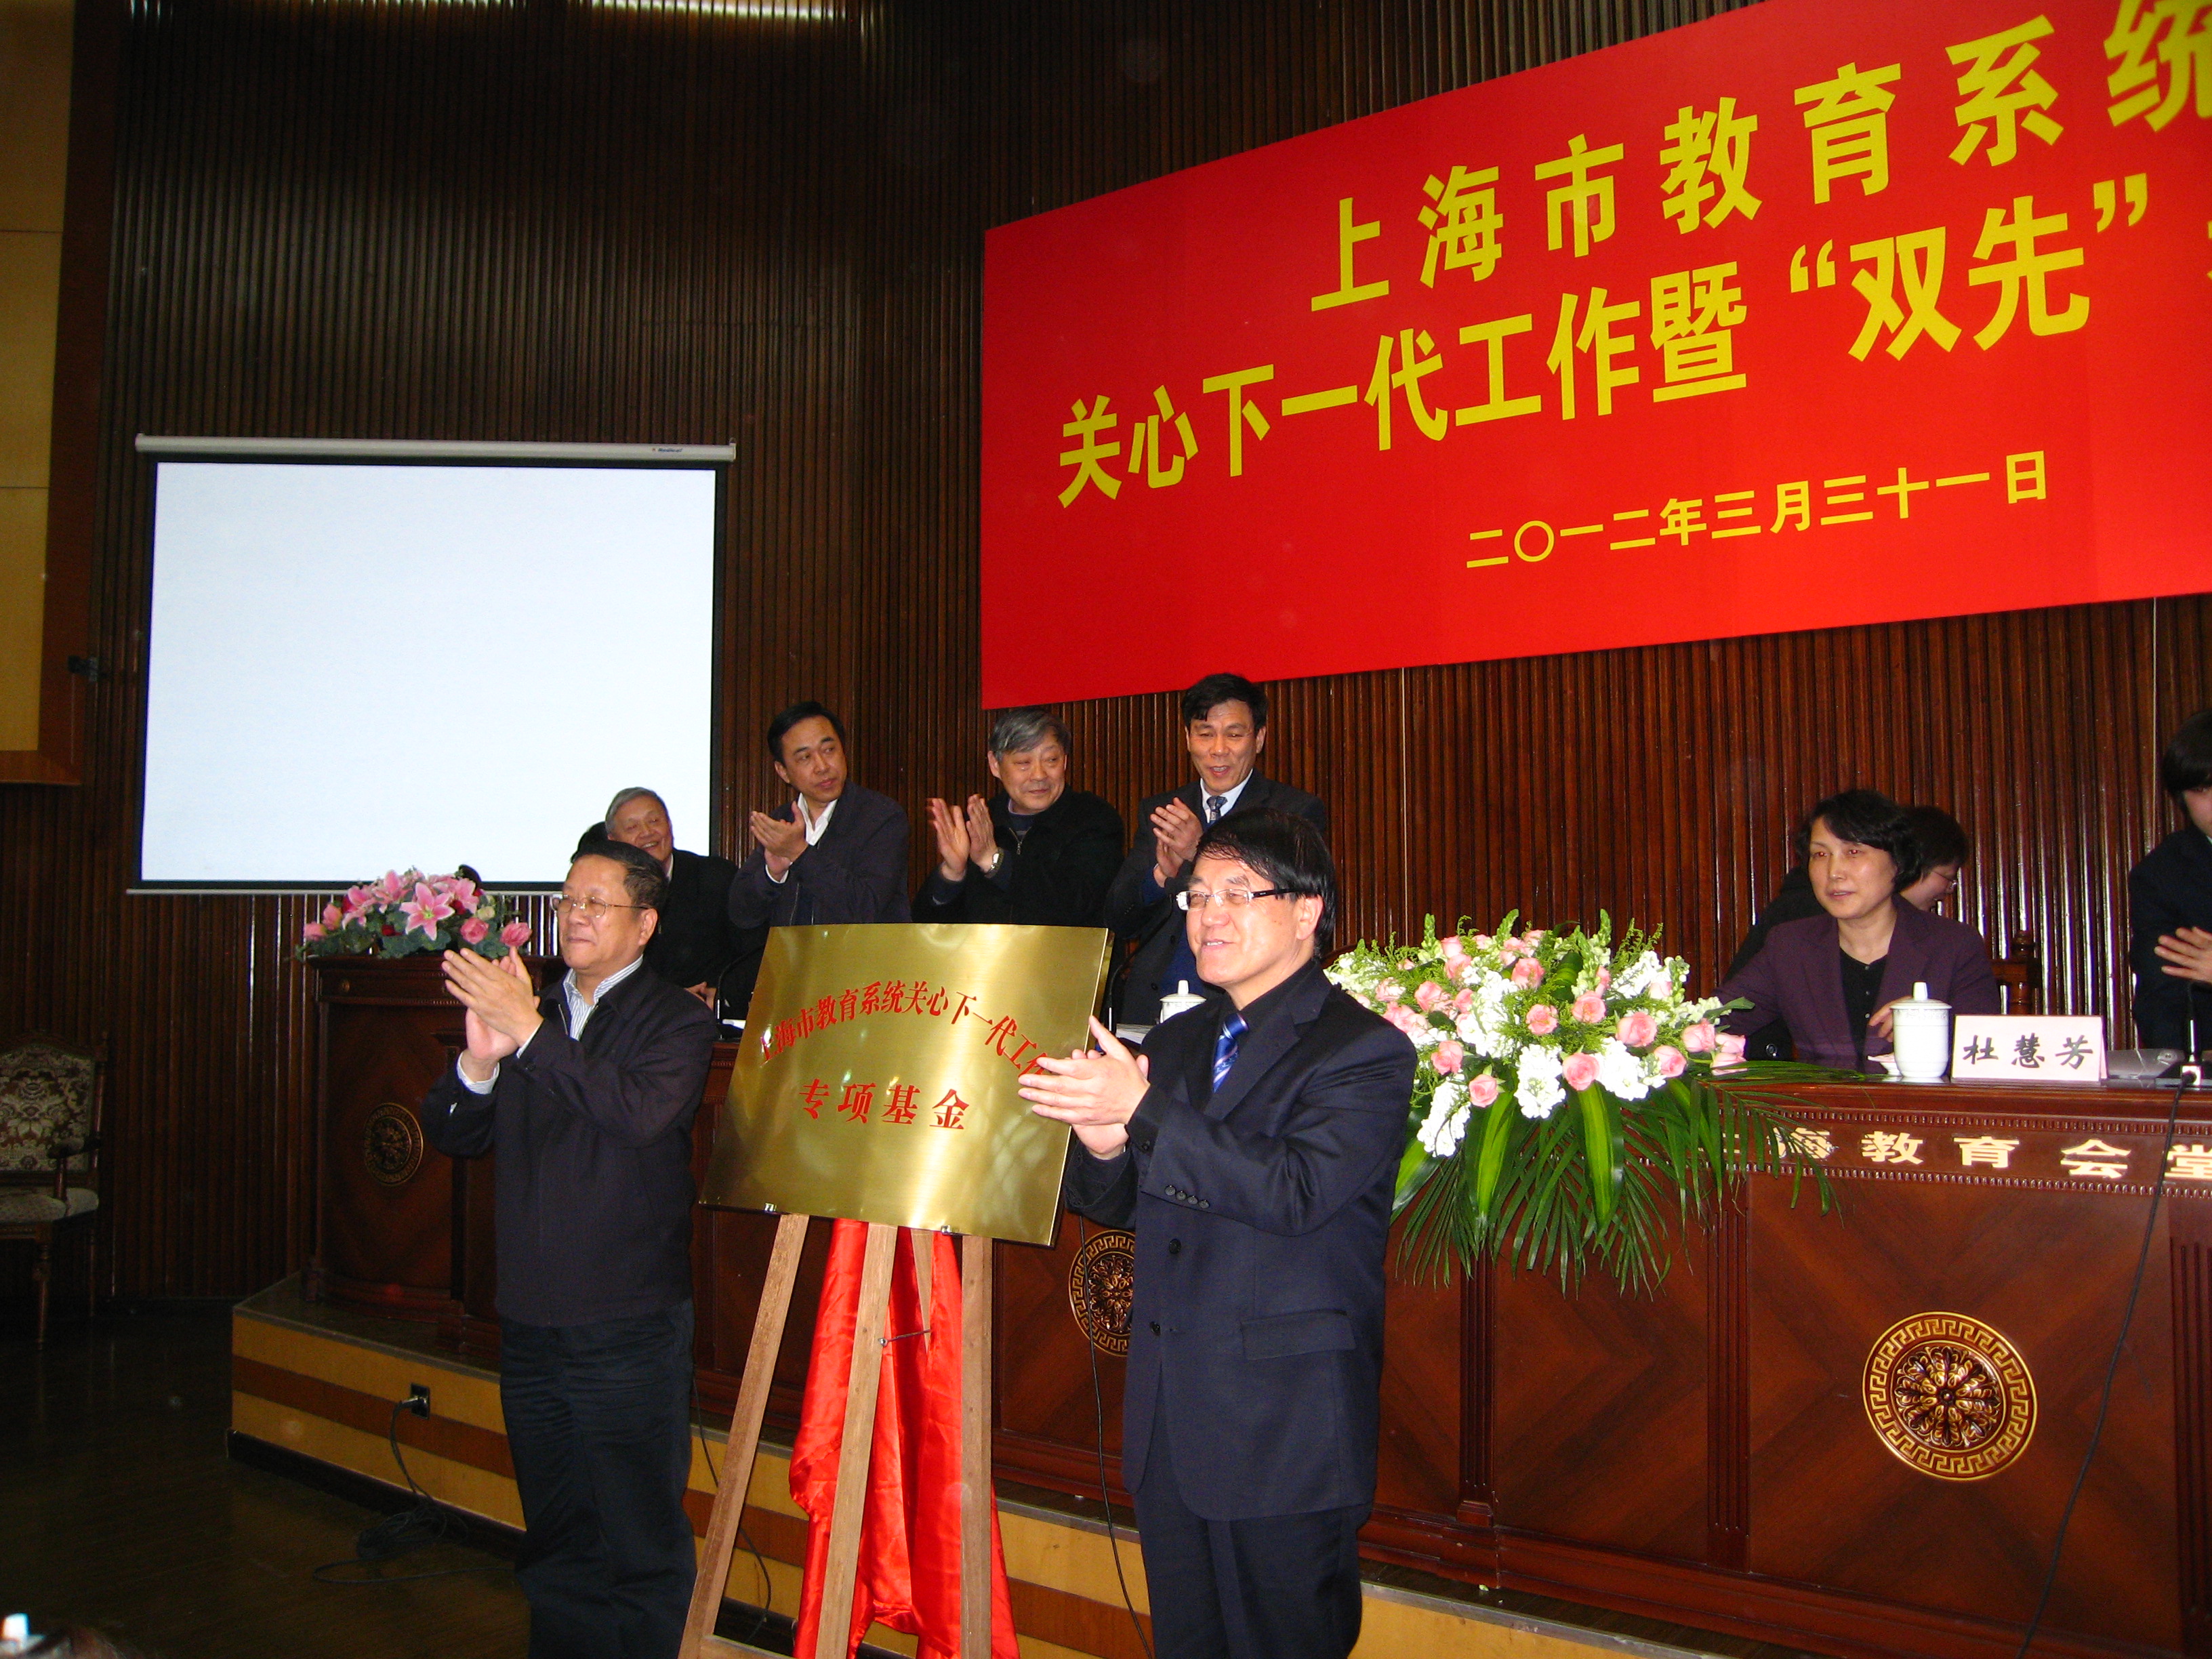 上海市教育系统关心下一代工作专项研究基金成立